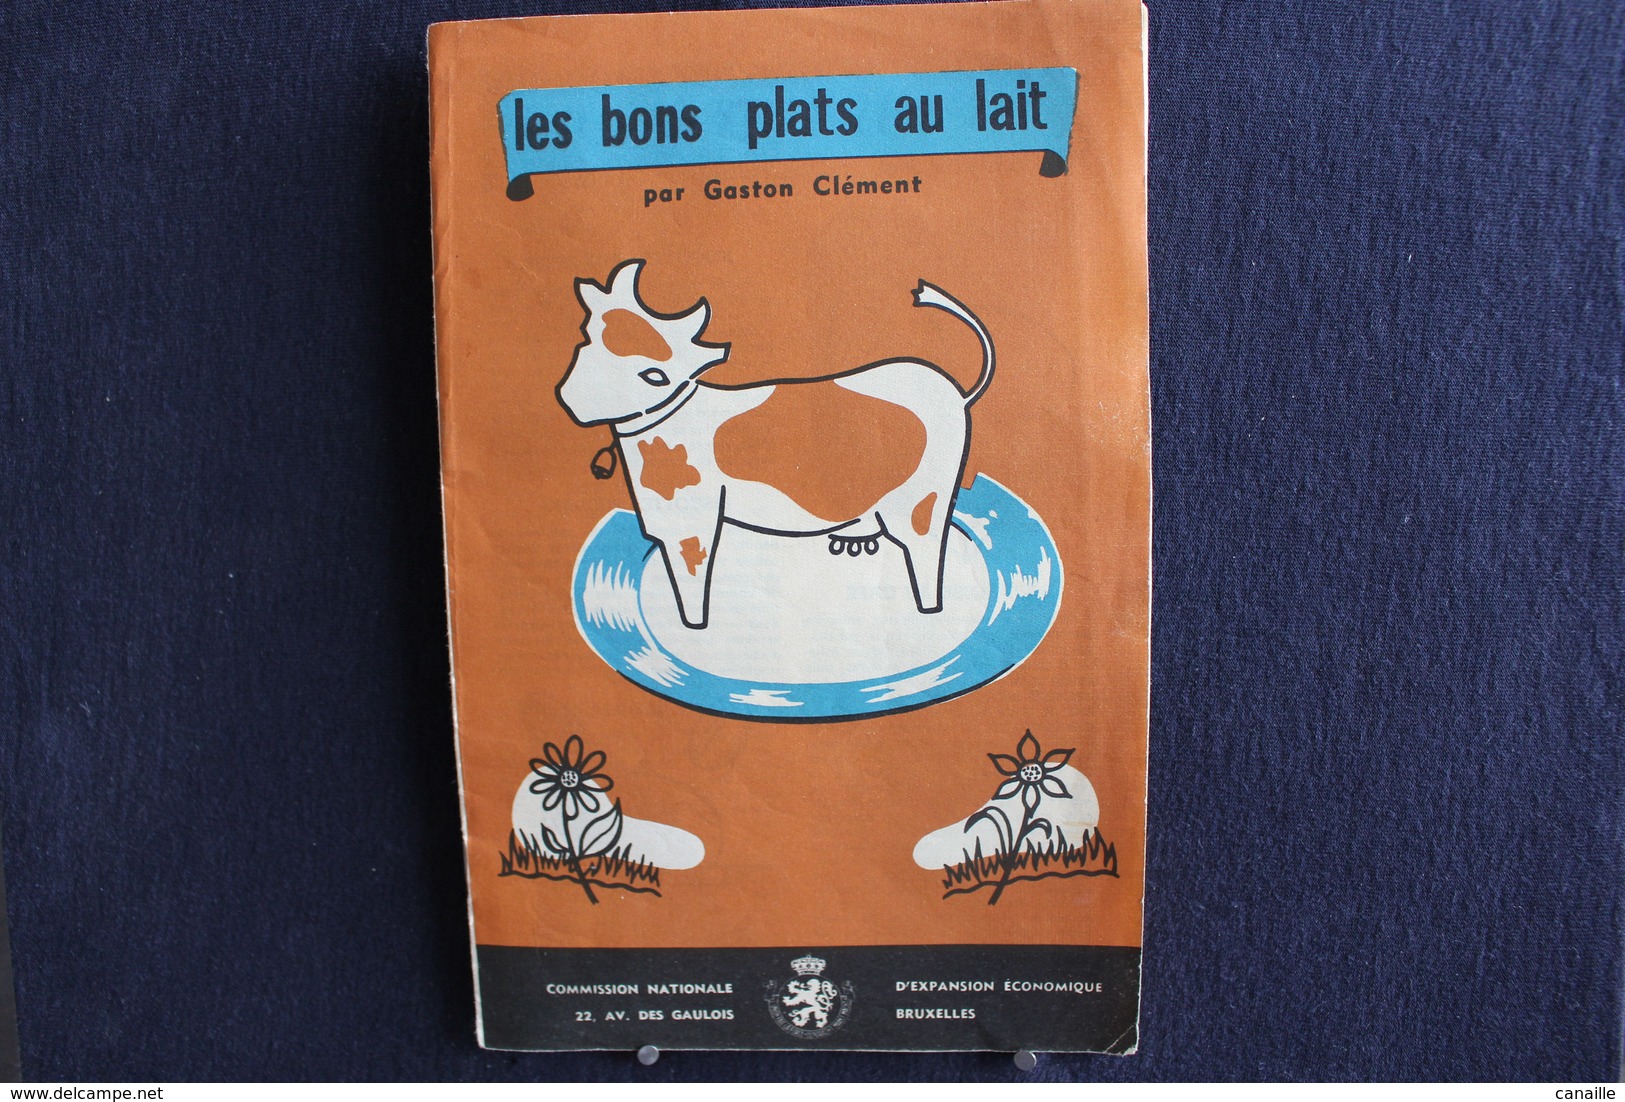 Publicités ( 4 )  - Livret De Cuisine - Par Gaston Clément - Les Bons Plats Au Lait -  Forma 13x20 Cm 8 Page - Koken & Wijn